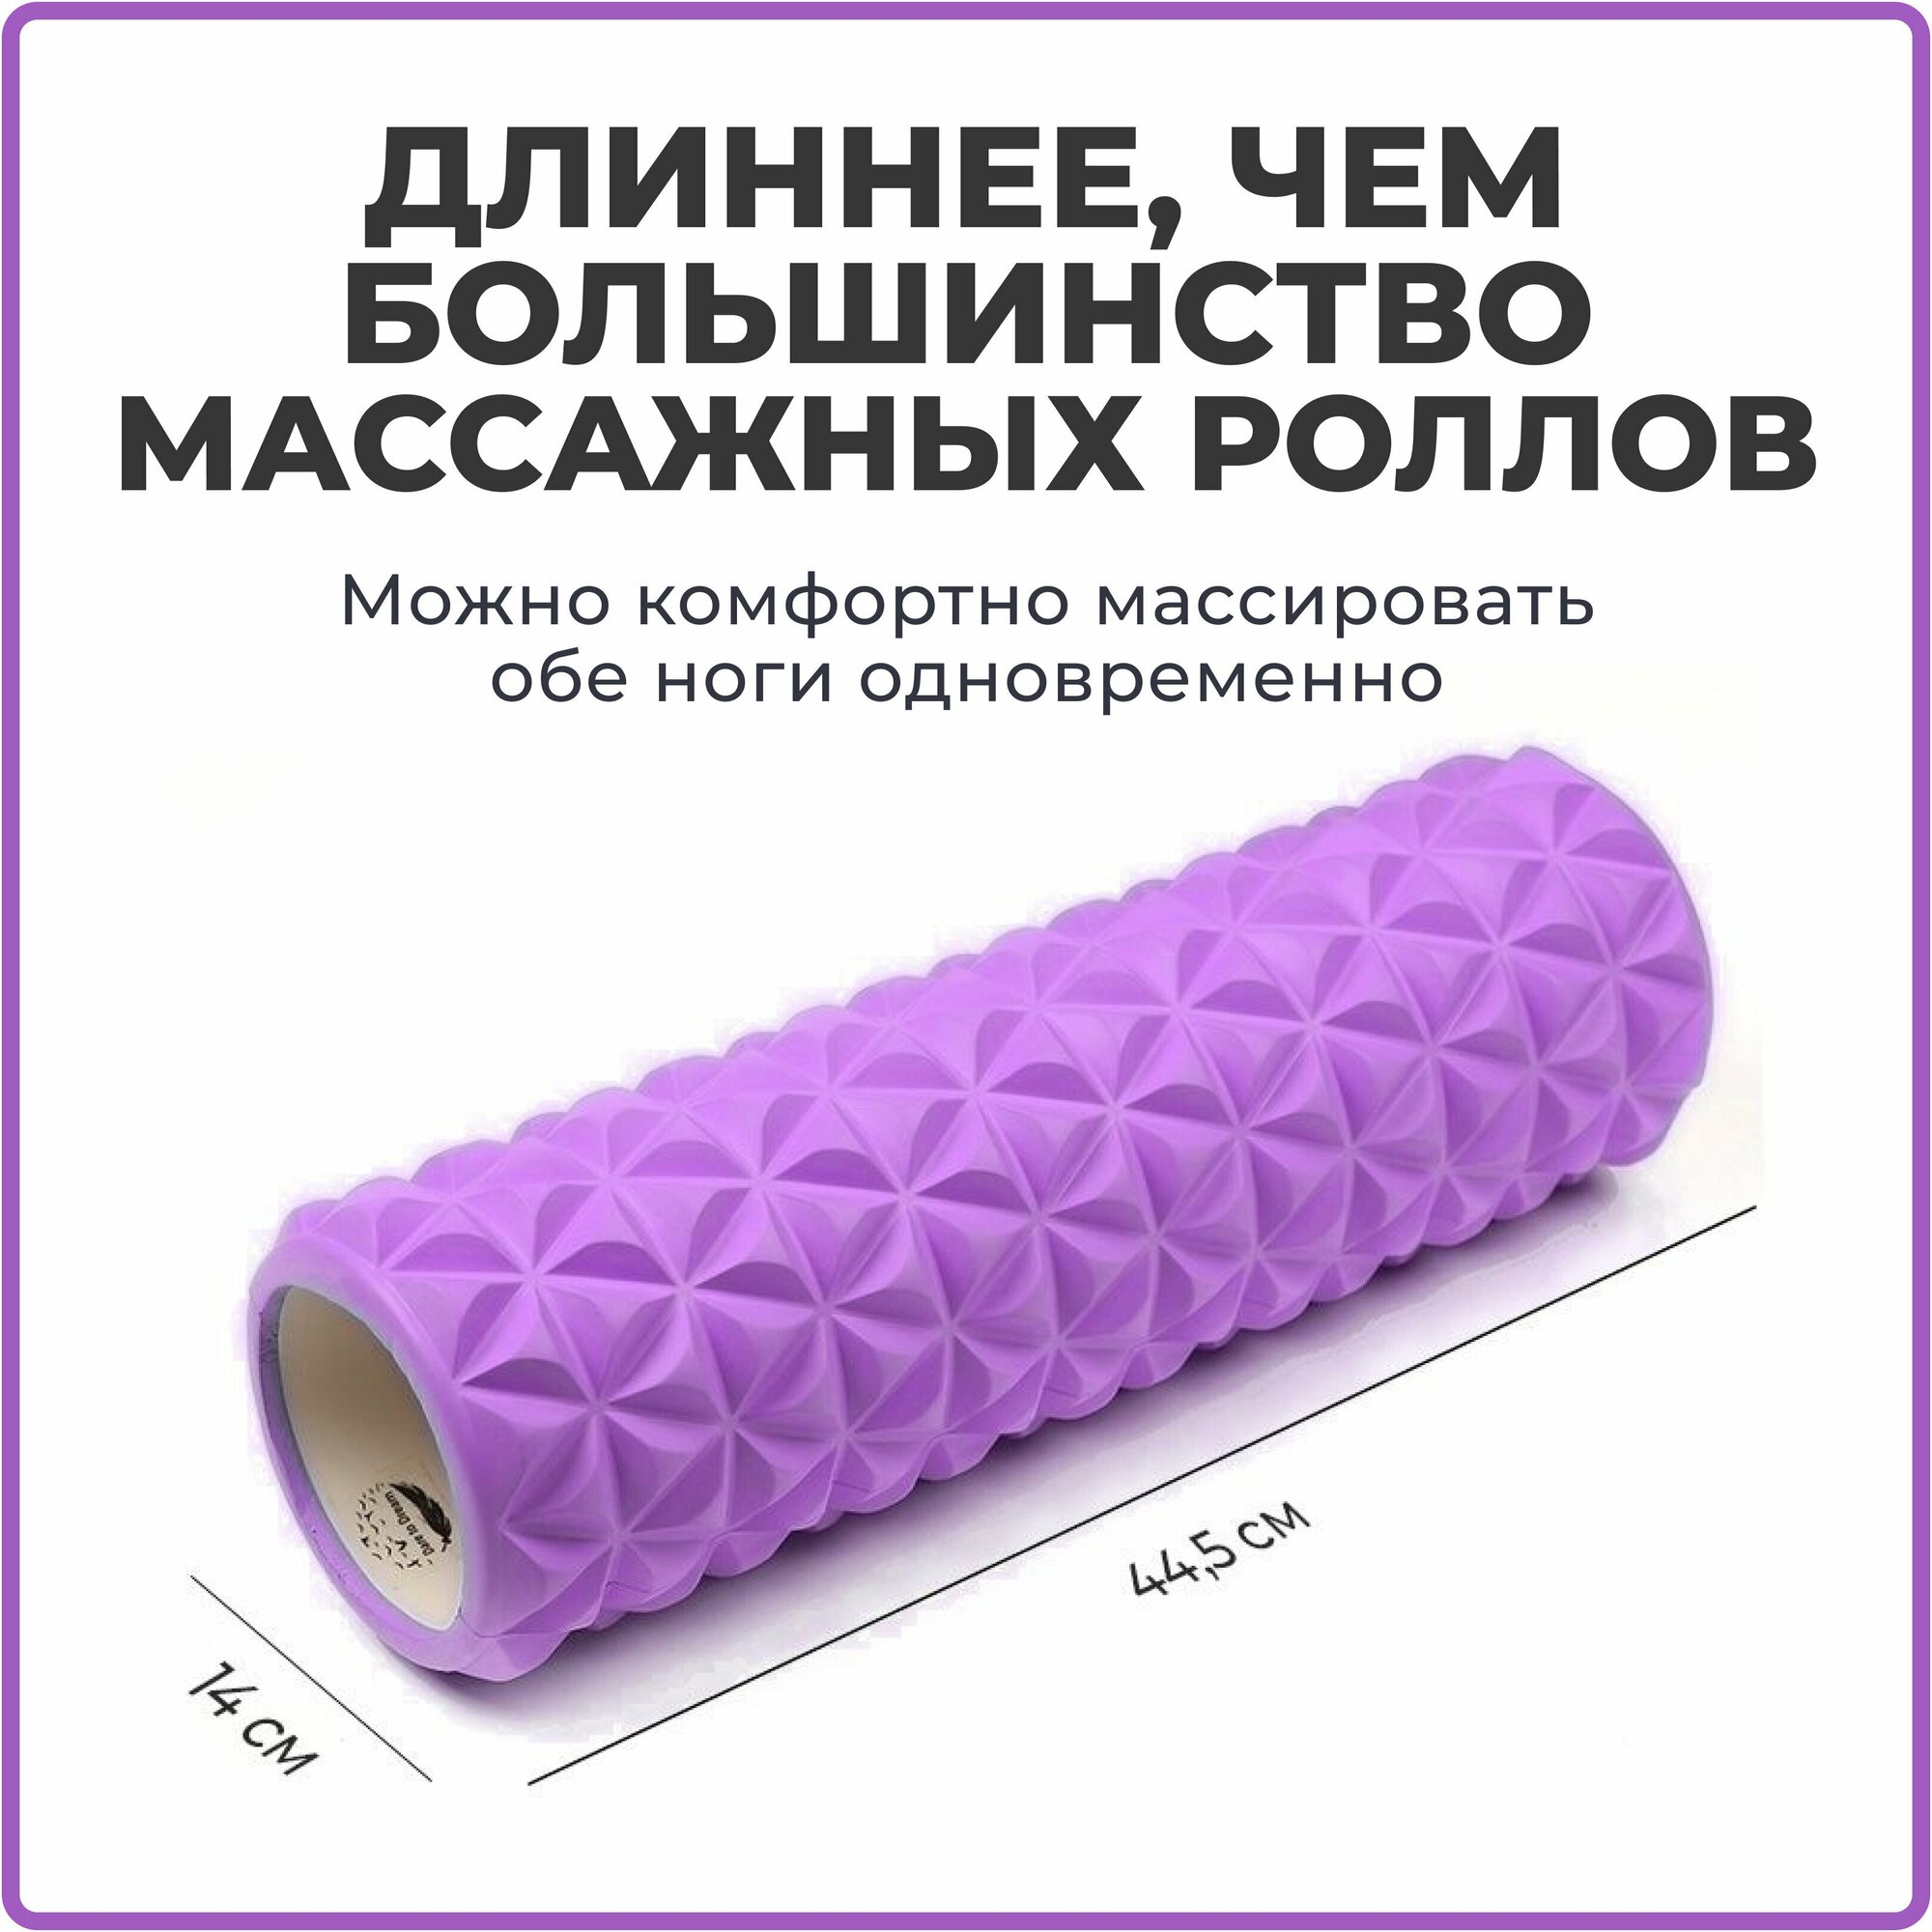 Ролик массажный 45 см для йоги, фитнеса, пилатеса и МФР, фиолетовый. Ролл для МФР, валик для спины, МФР ролл, массажер для спины - фотография № 1